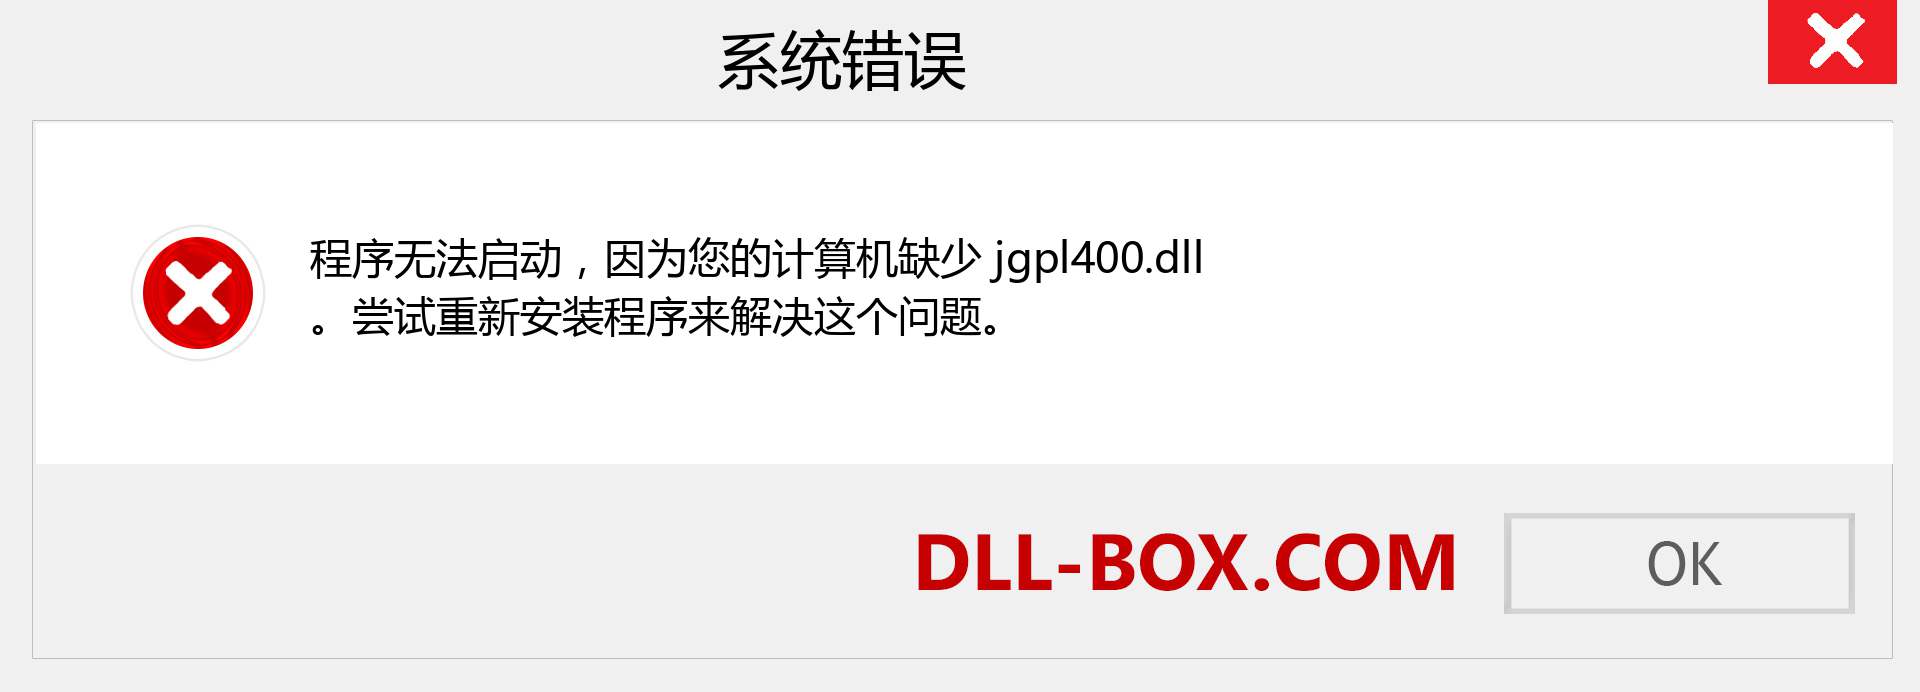 jgpl400.dll 文件丢失？。 适用于 Windows 7、8、10 的下载 - 修复 Windows、照片、图像上的 jgpl400 dll 丢失错误